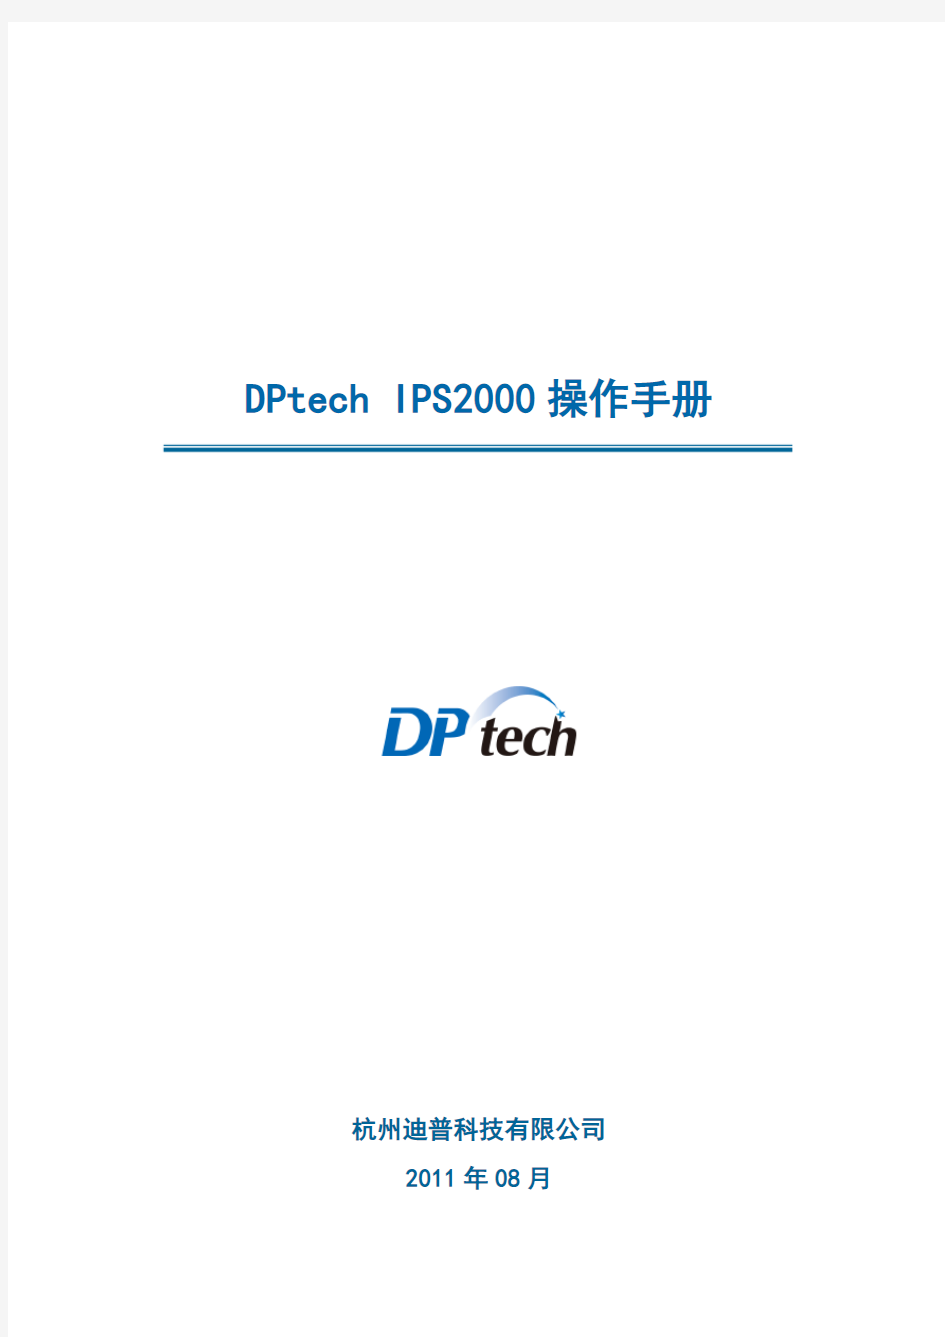 DPtech-IPS2000系列入侵防御系统操作手册